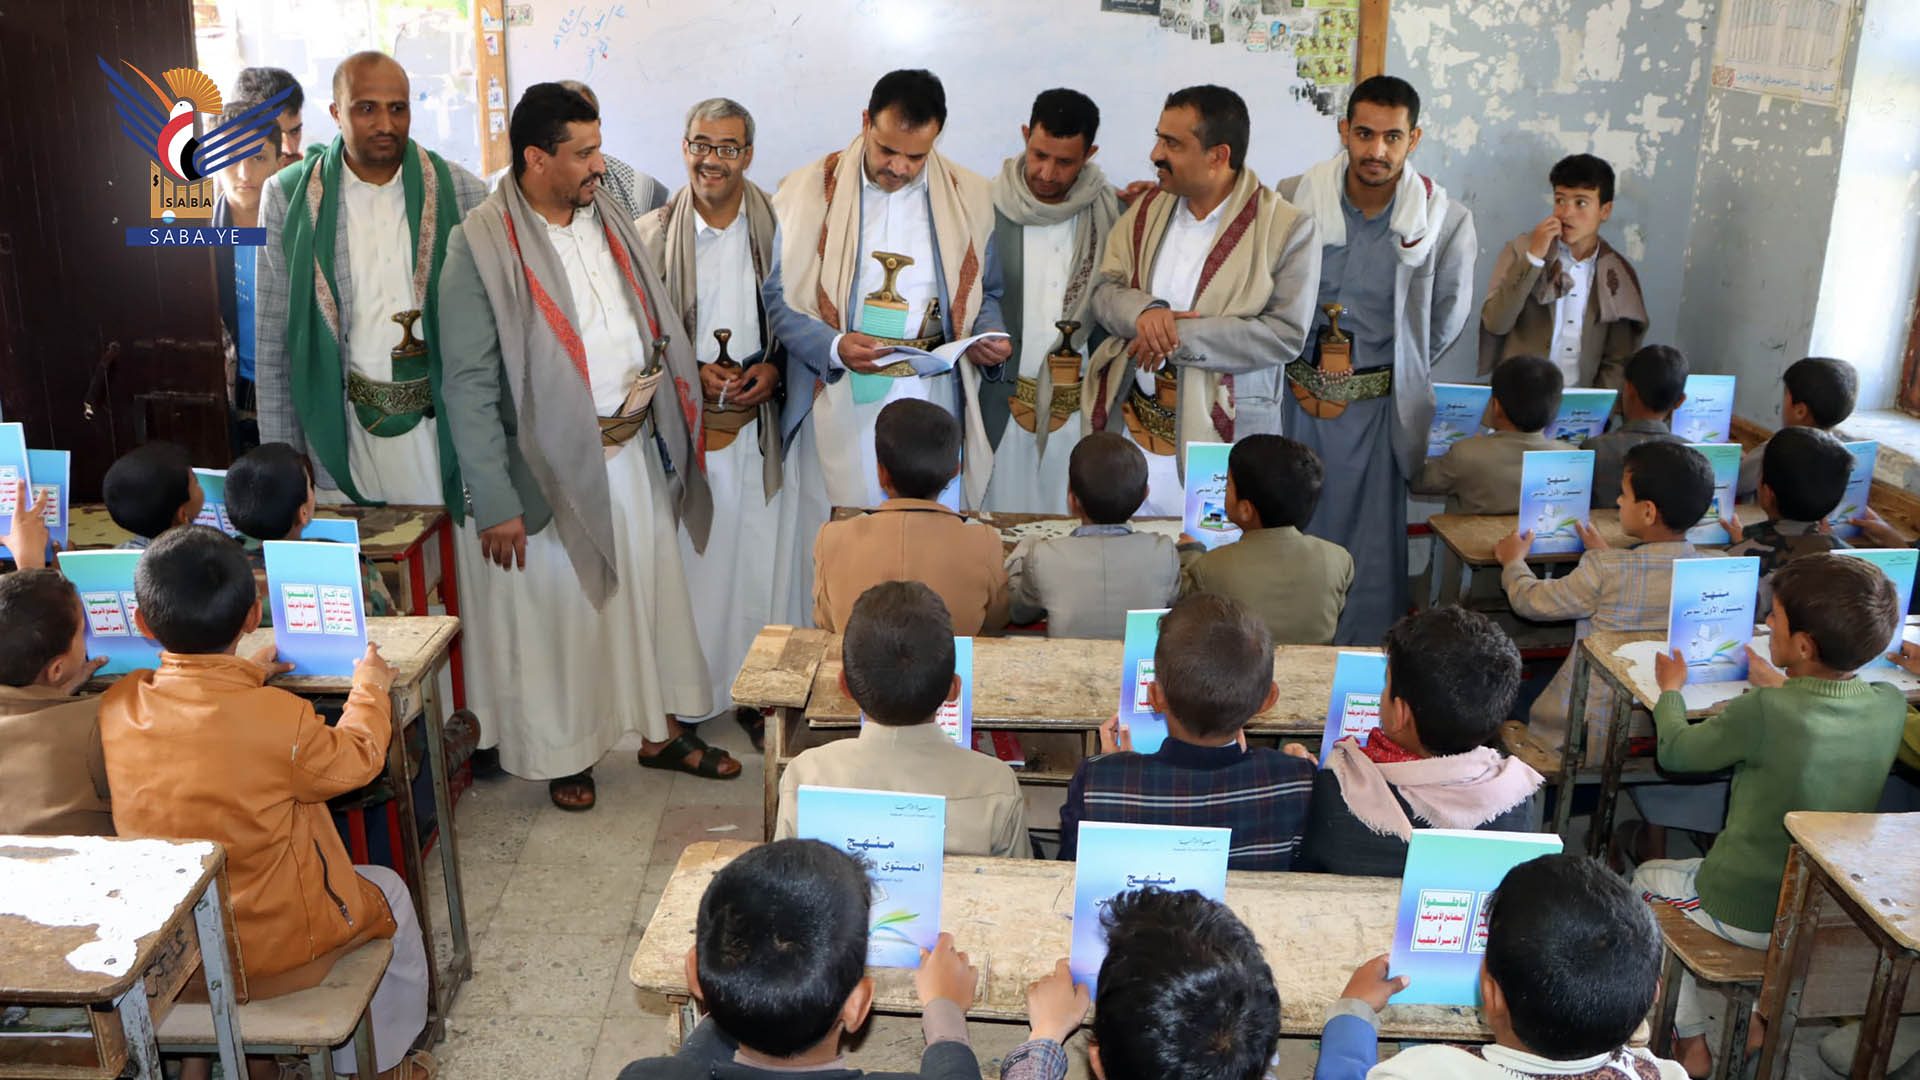 الدورات الصيفية استراتيجية حوثية لتفخيخ الطفولة في اليمن (إعادة نشر)